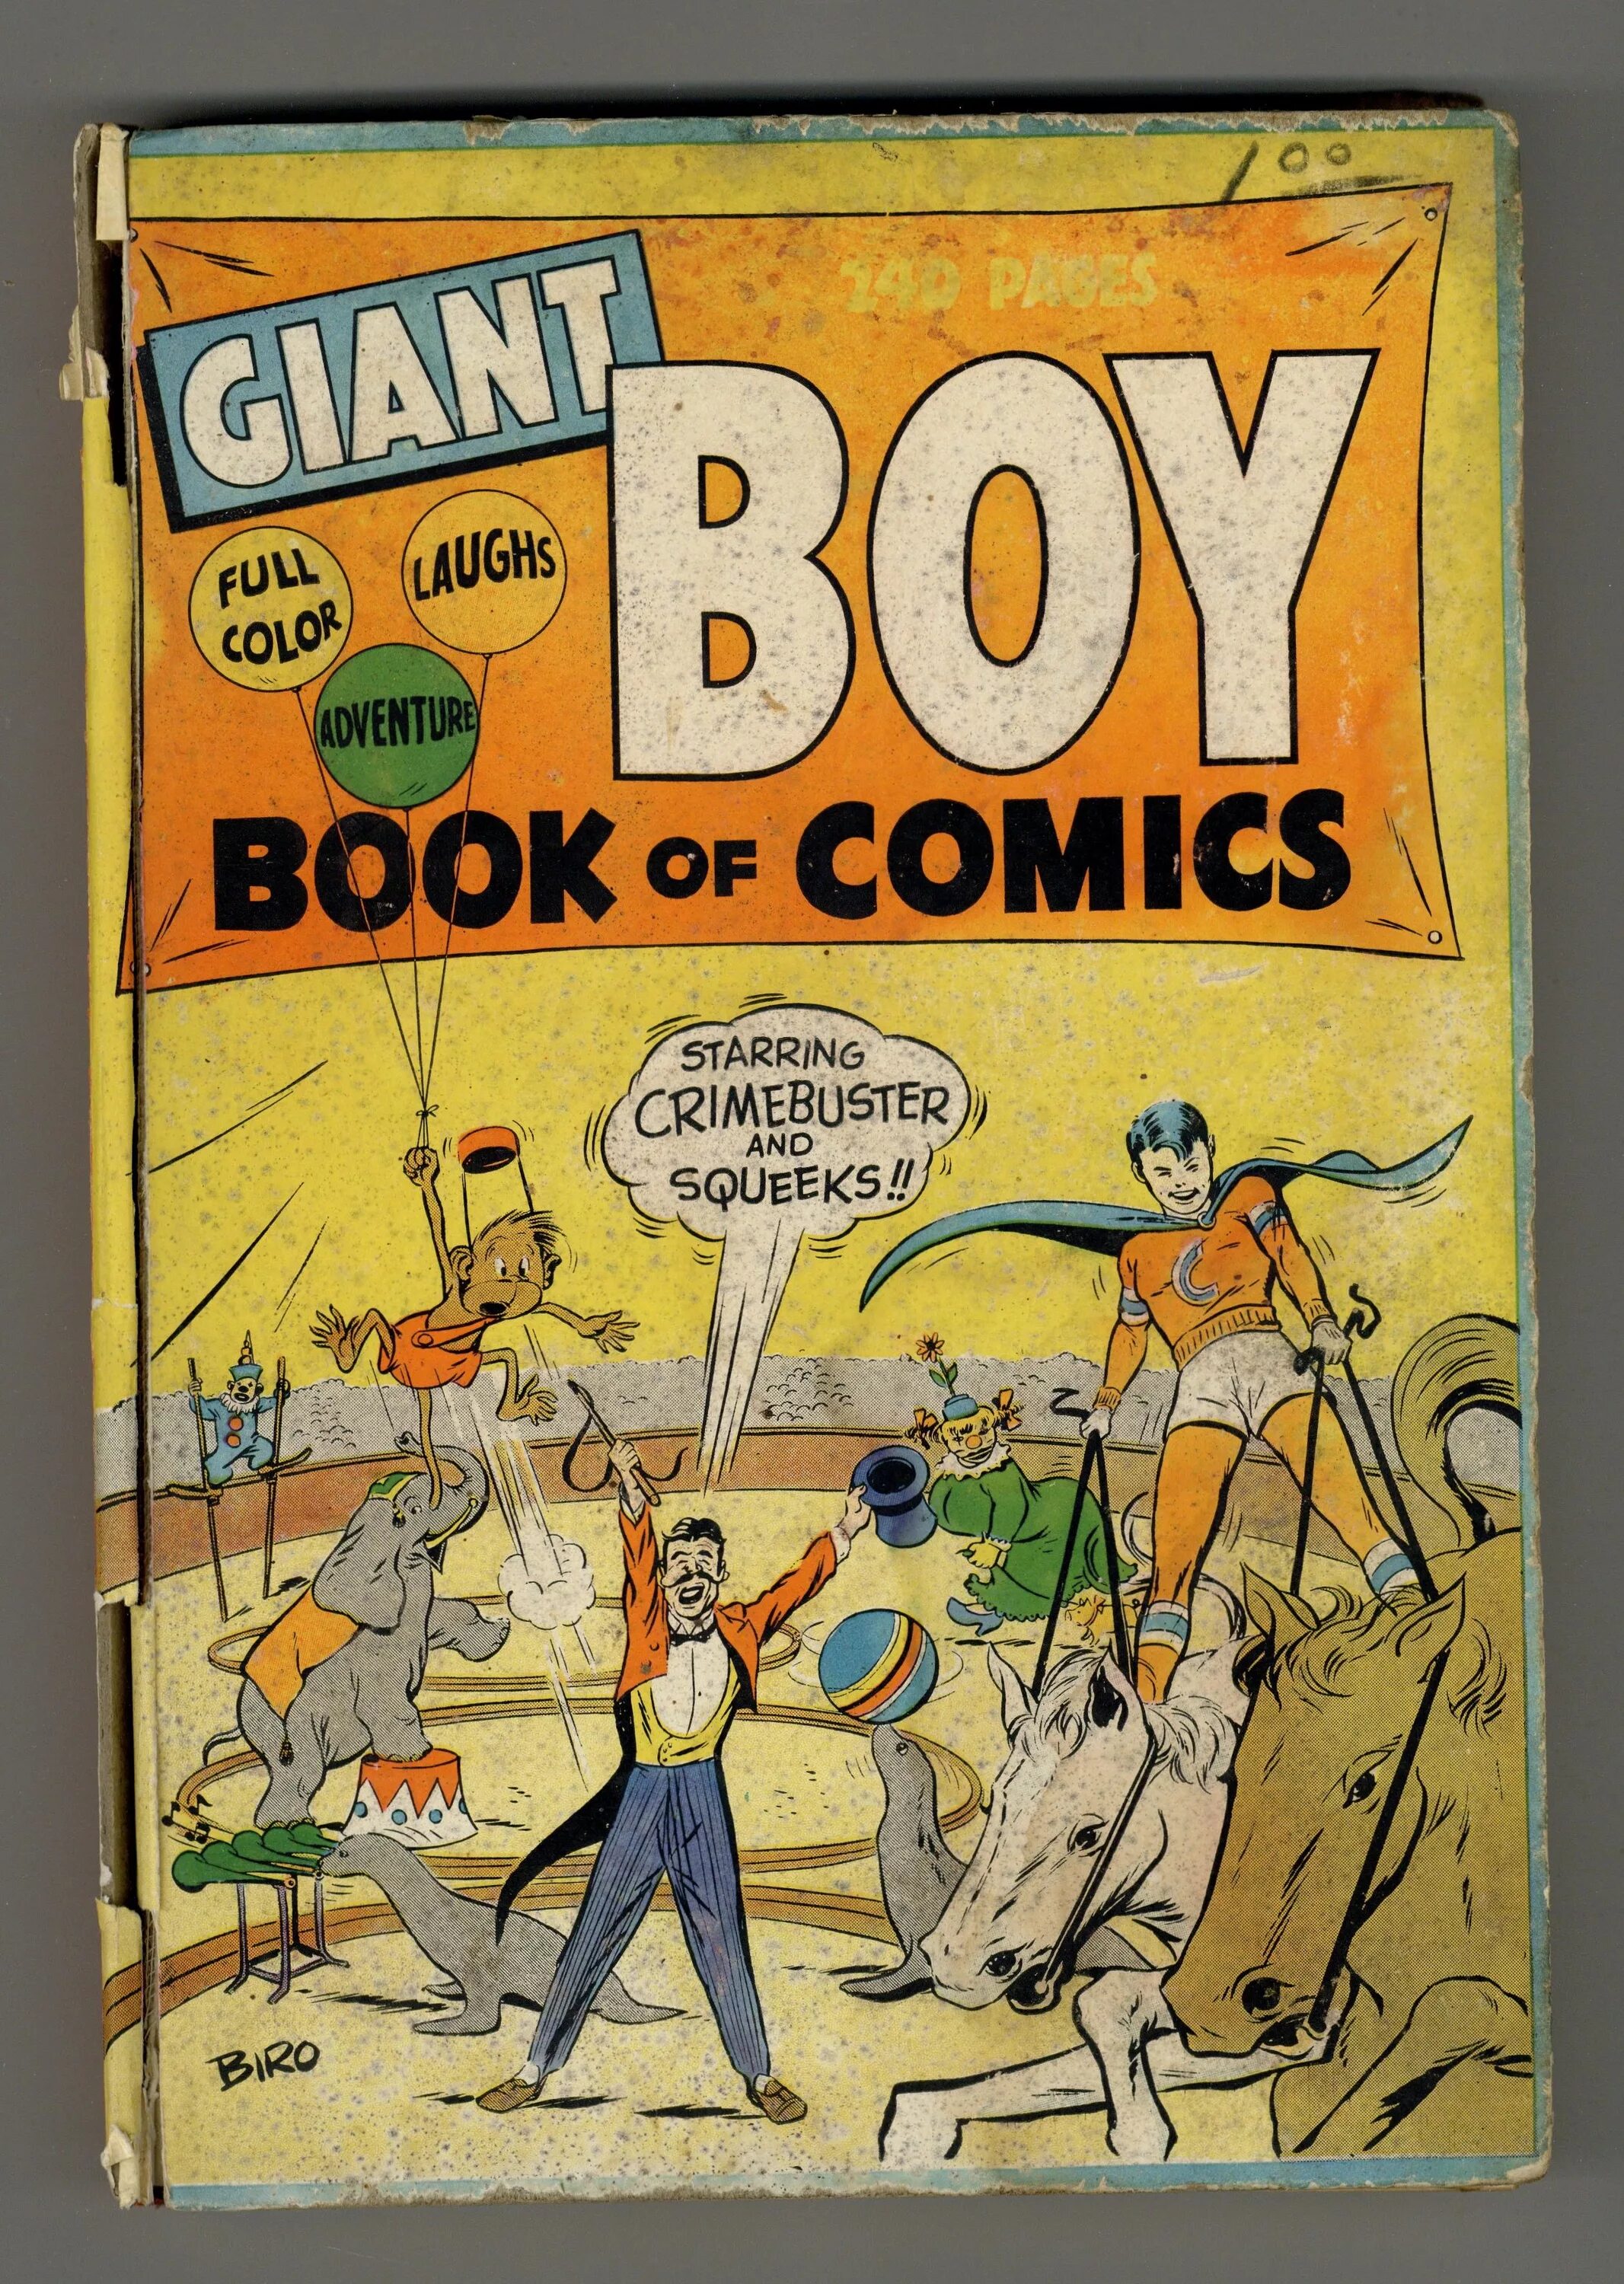 My boy book. Гигант boys. Giant boy Comics. Giant boy growth Comics. Giant boy growing.